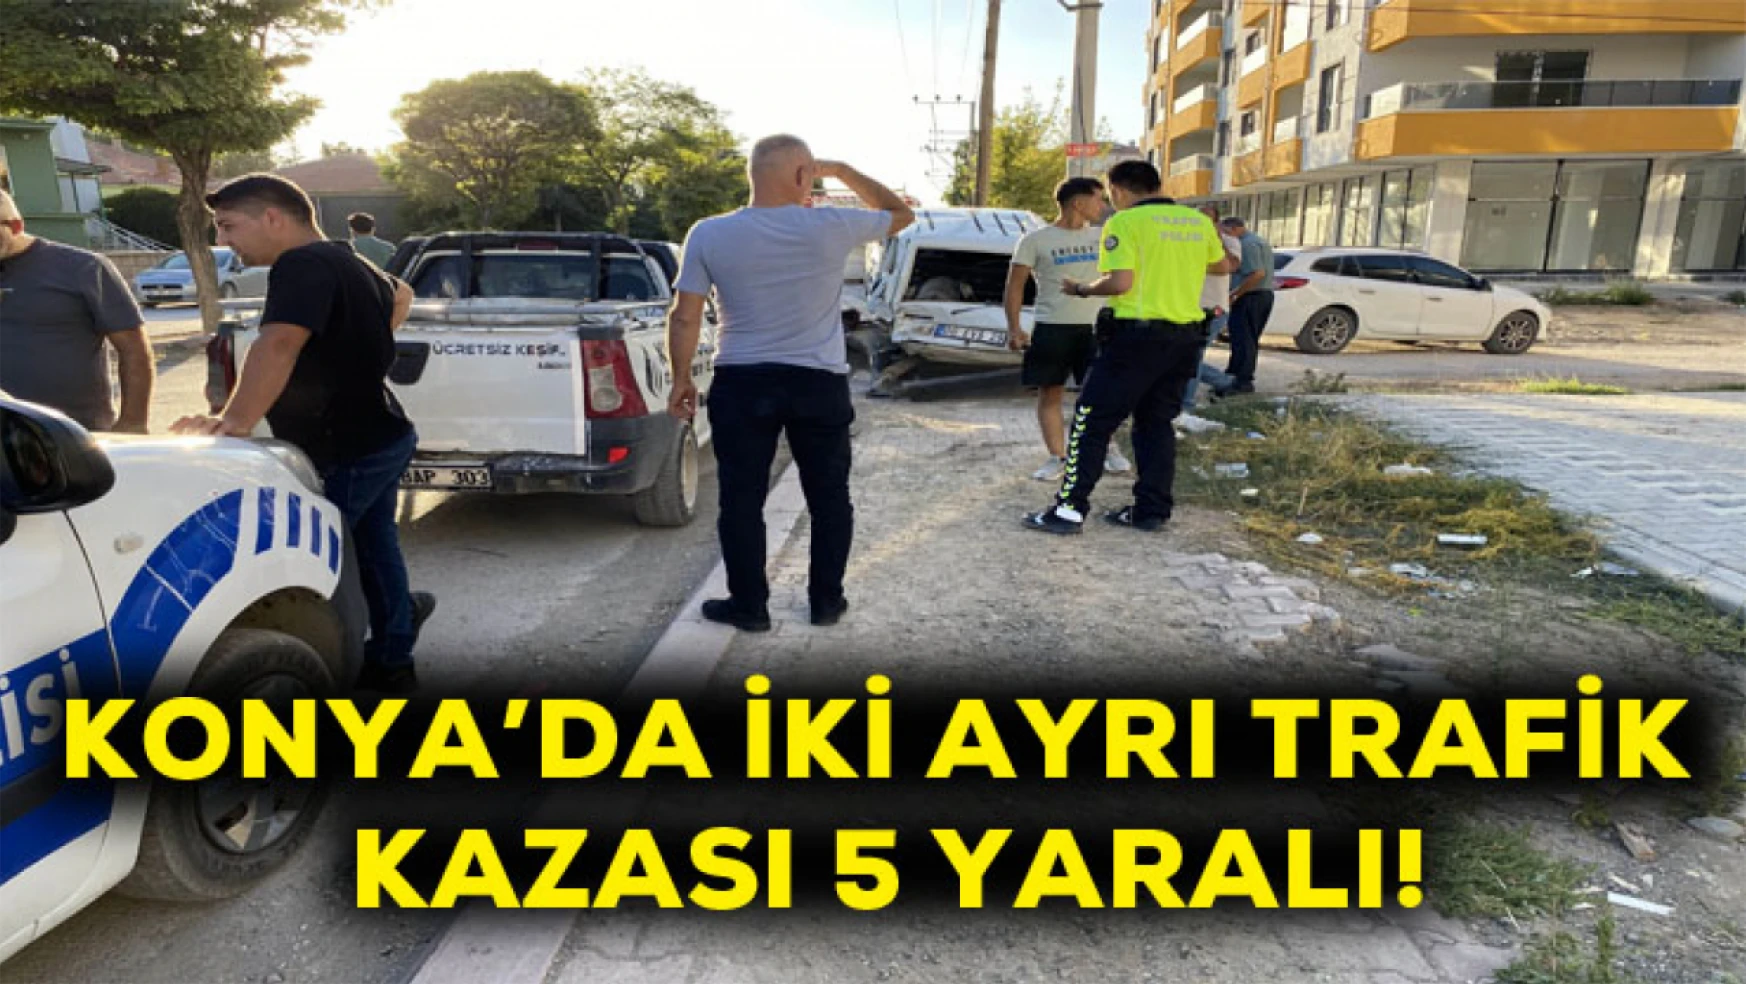 Konya'da iki ayrı trafik kazası! 5 yaralı